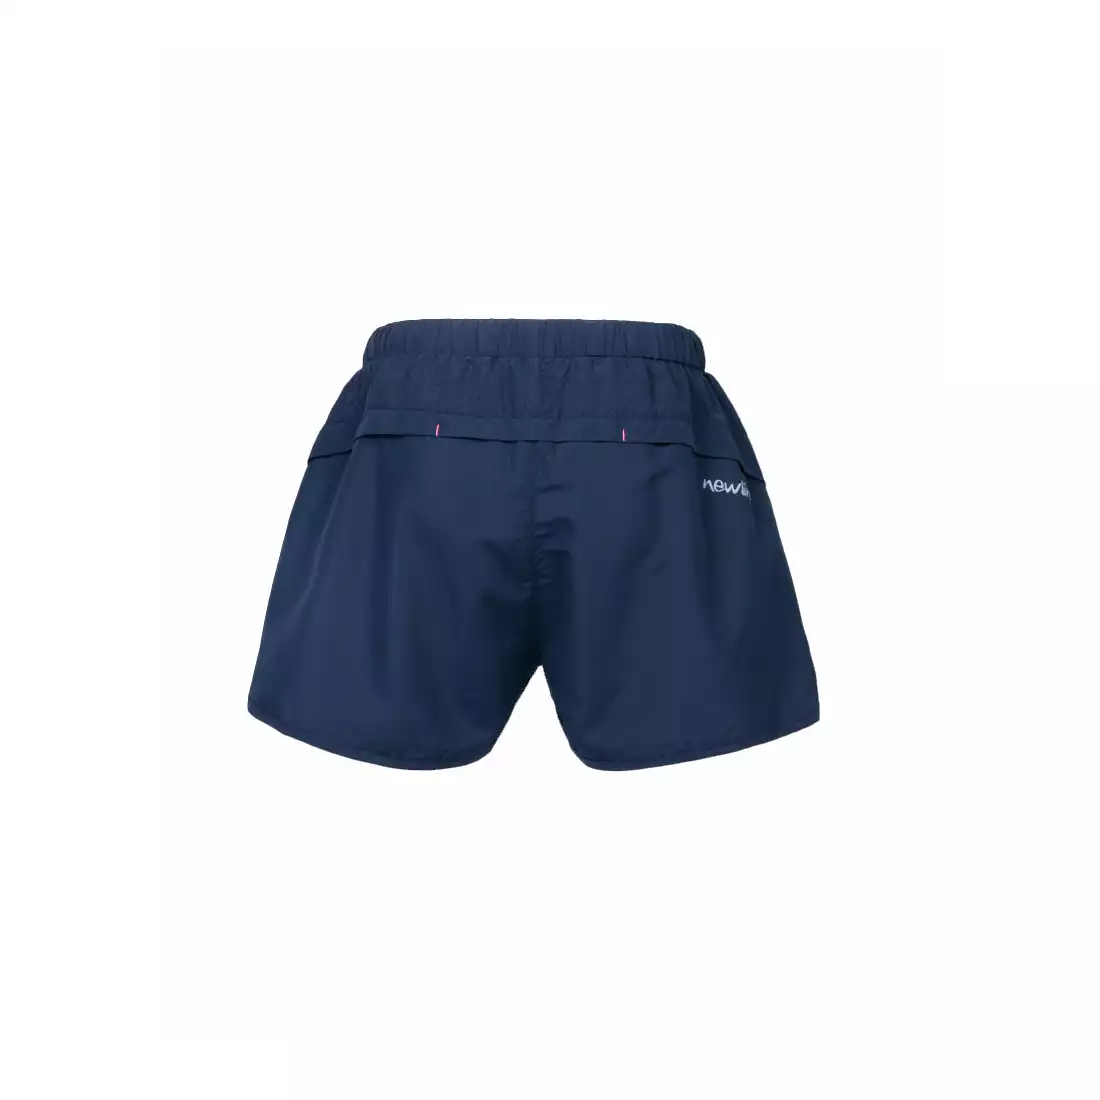 NEWLINE IMOTION 2 Lay shorts - damskie szorty/spodenki do biegania 10738-275